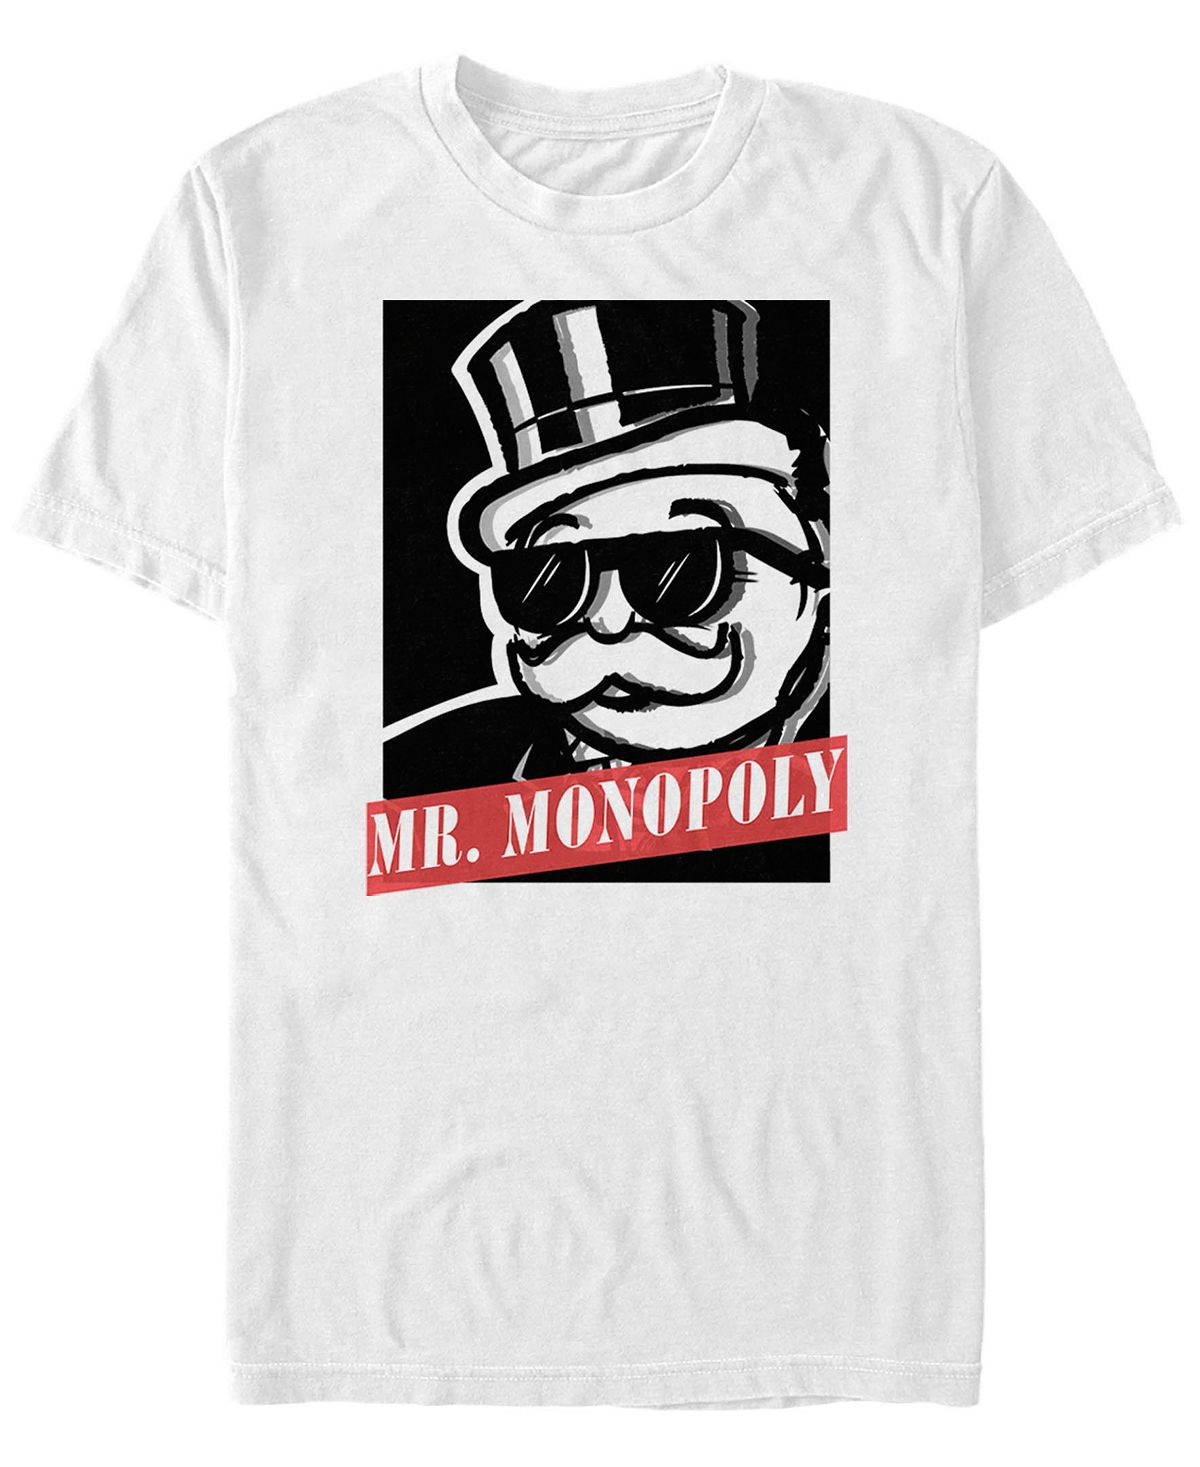 Мужская футболка с коротким рукавом mr monopoly с графическим плакатом Fifth Sun, белый мужская футболка с коротким рукавом с плакатом she hulk fifth sun черный